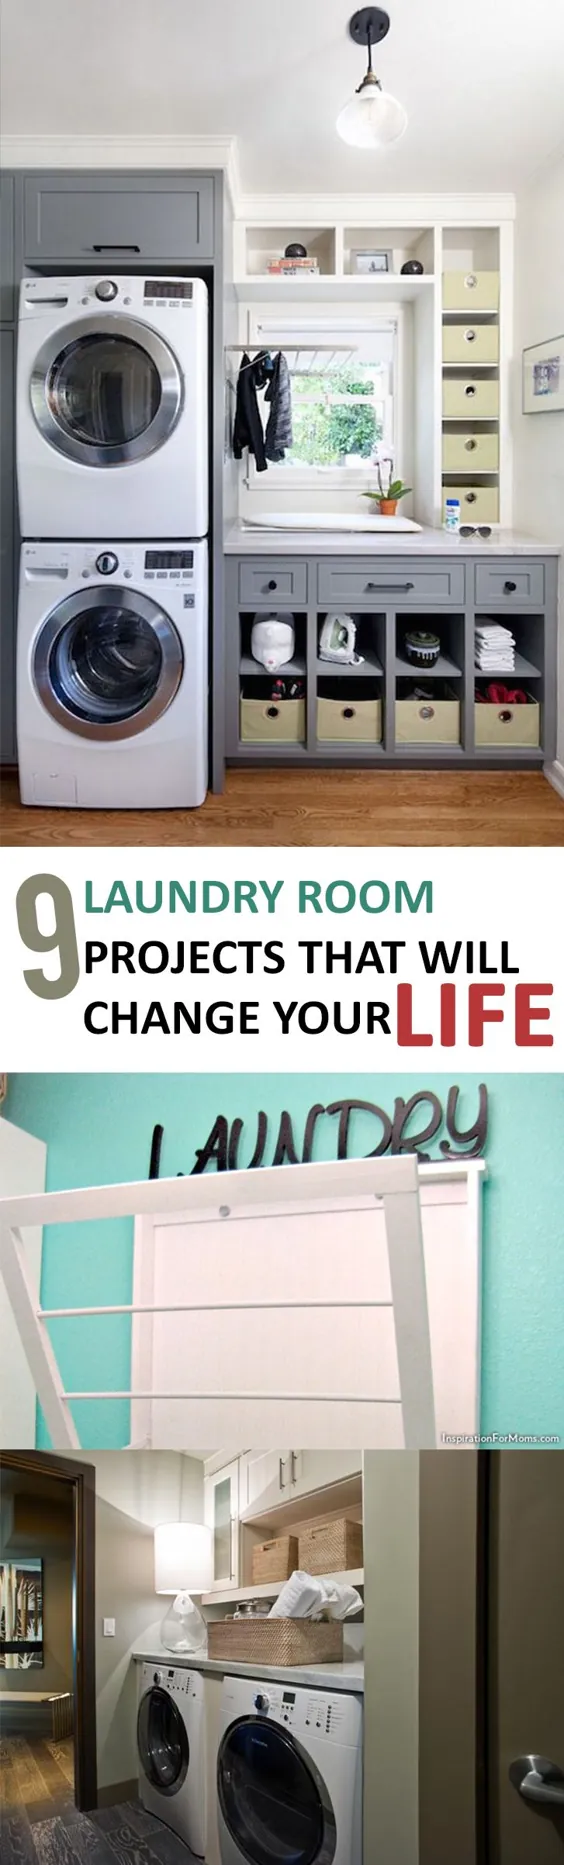 9 پروژه اتاق لباسشویی که زندگی شما را تغییر خواهد داد